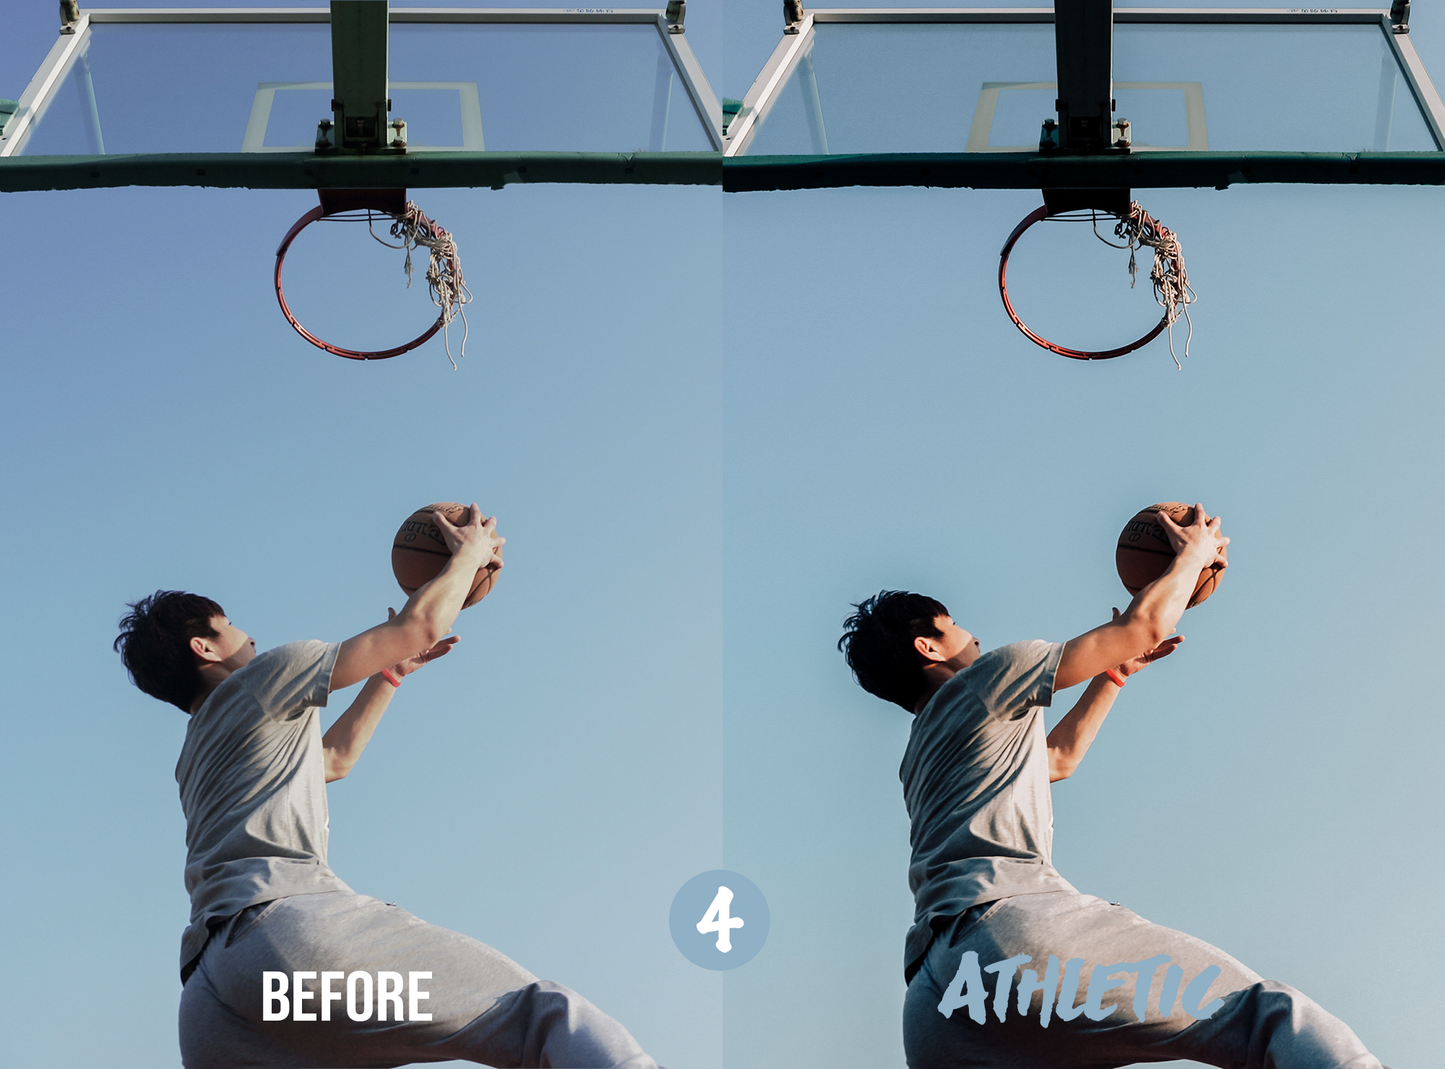 Basketball Lightroom Presets for Mobile & Desktop - Juicy Looks Presets